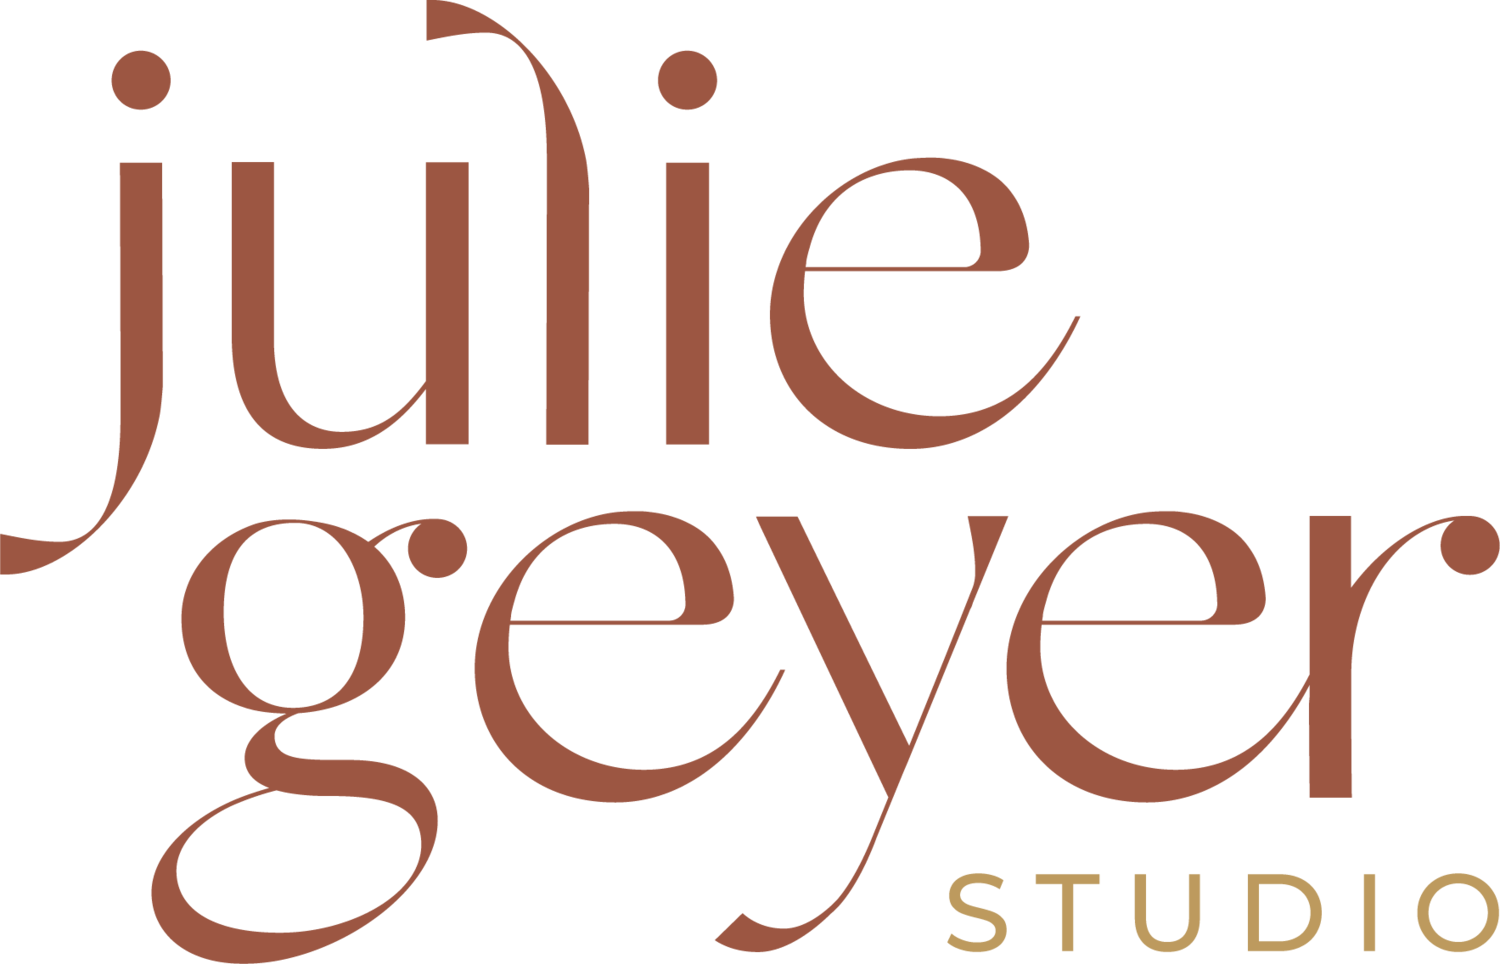 Julie Geyer Studio